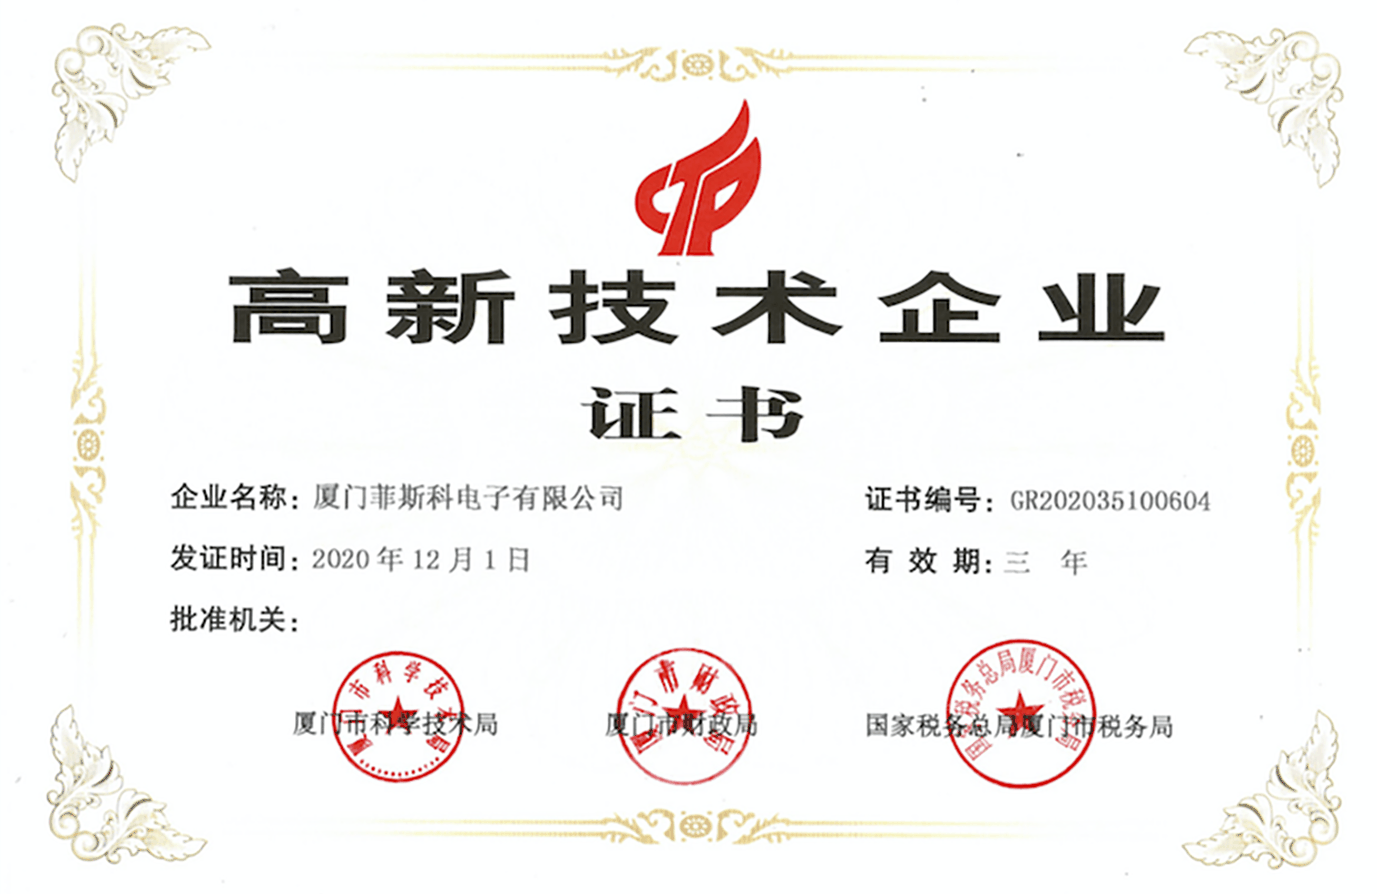 Certificat d'entreprise de haute technologie.png